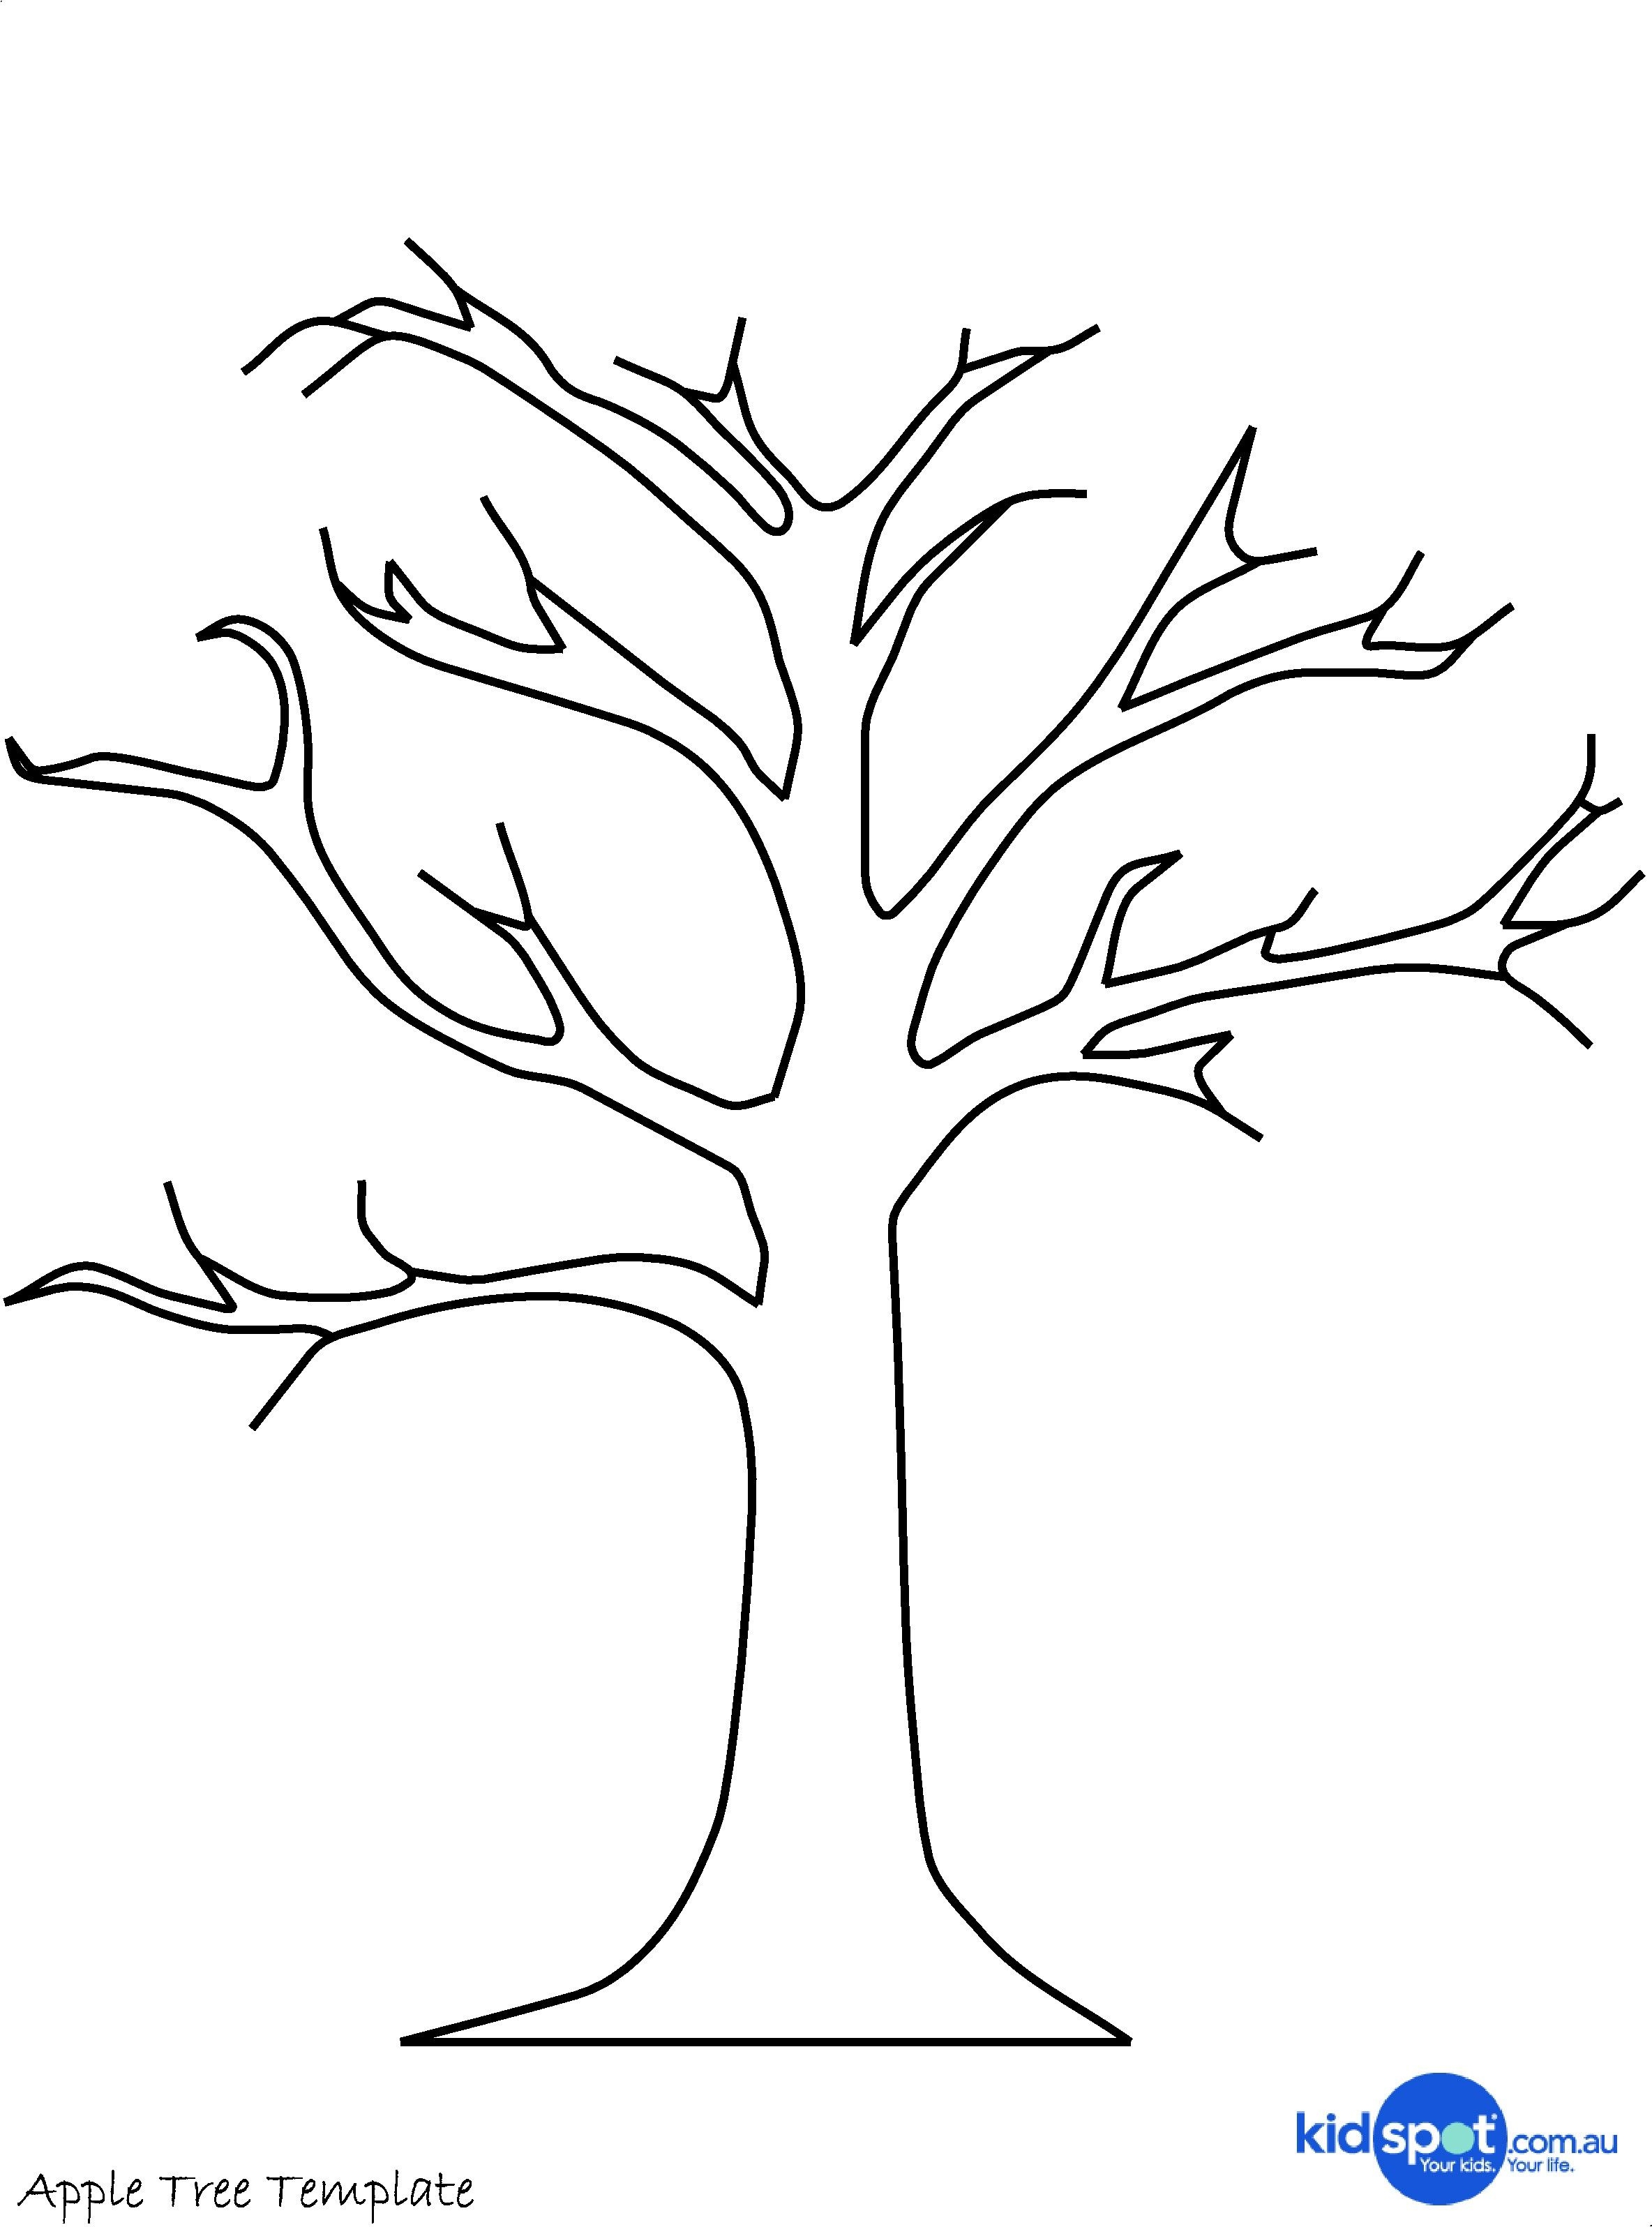 Ствол дерева рисунок для аппликации: ствол из цветной бумаги. Поделки без листьев и объемная аппликация, дерево-рука и обрывная поделка для детей, другие идеи